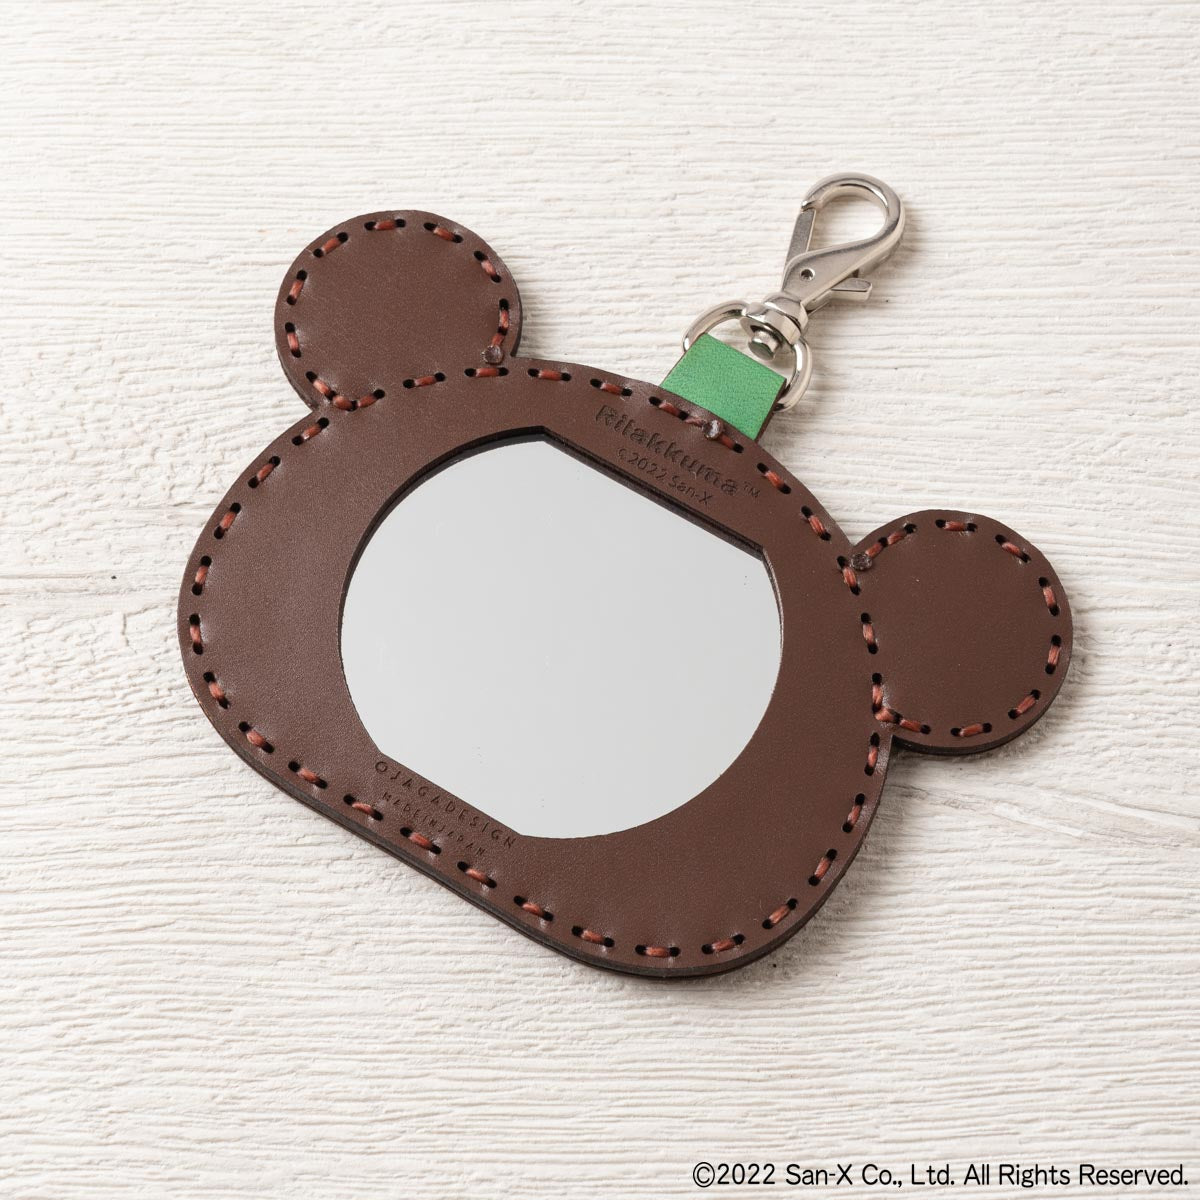 パックンチョみたいで可愛いですojaga design × mickey mouse Disney